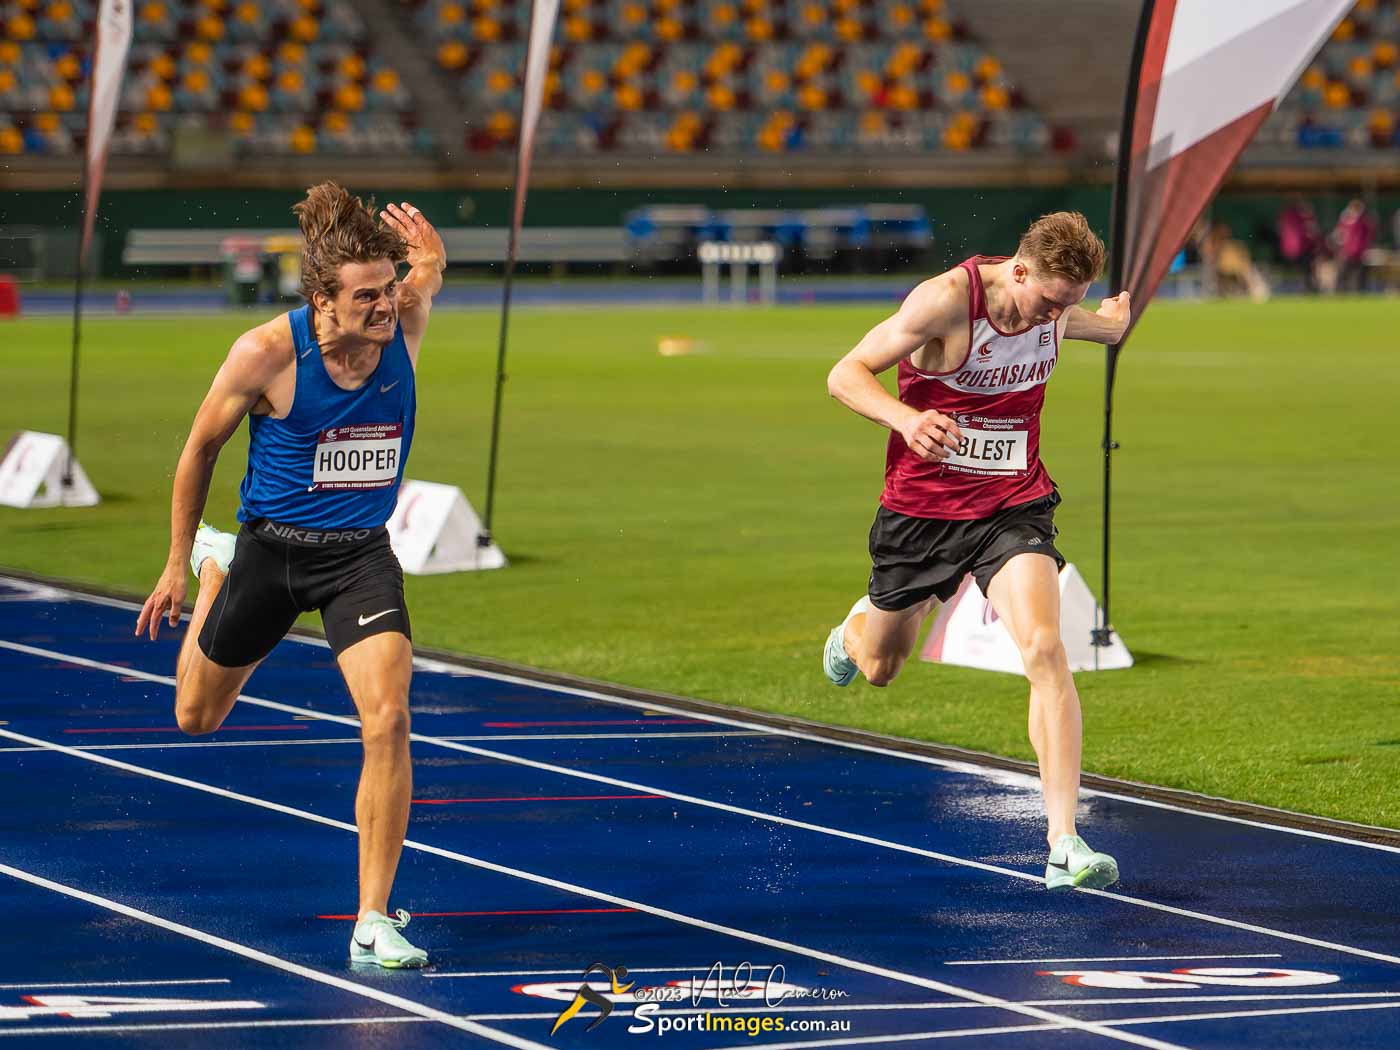 Taige Hooper, Daniel Blest, Heat 4, Men Open 400m